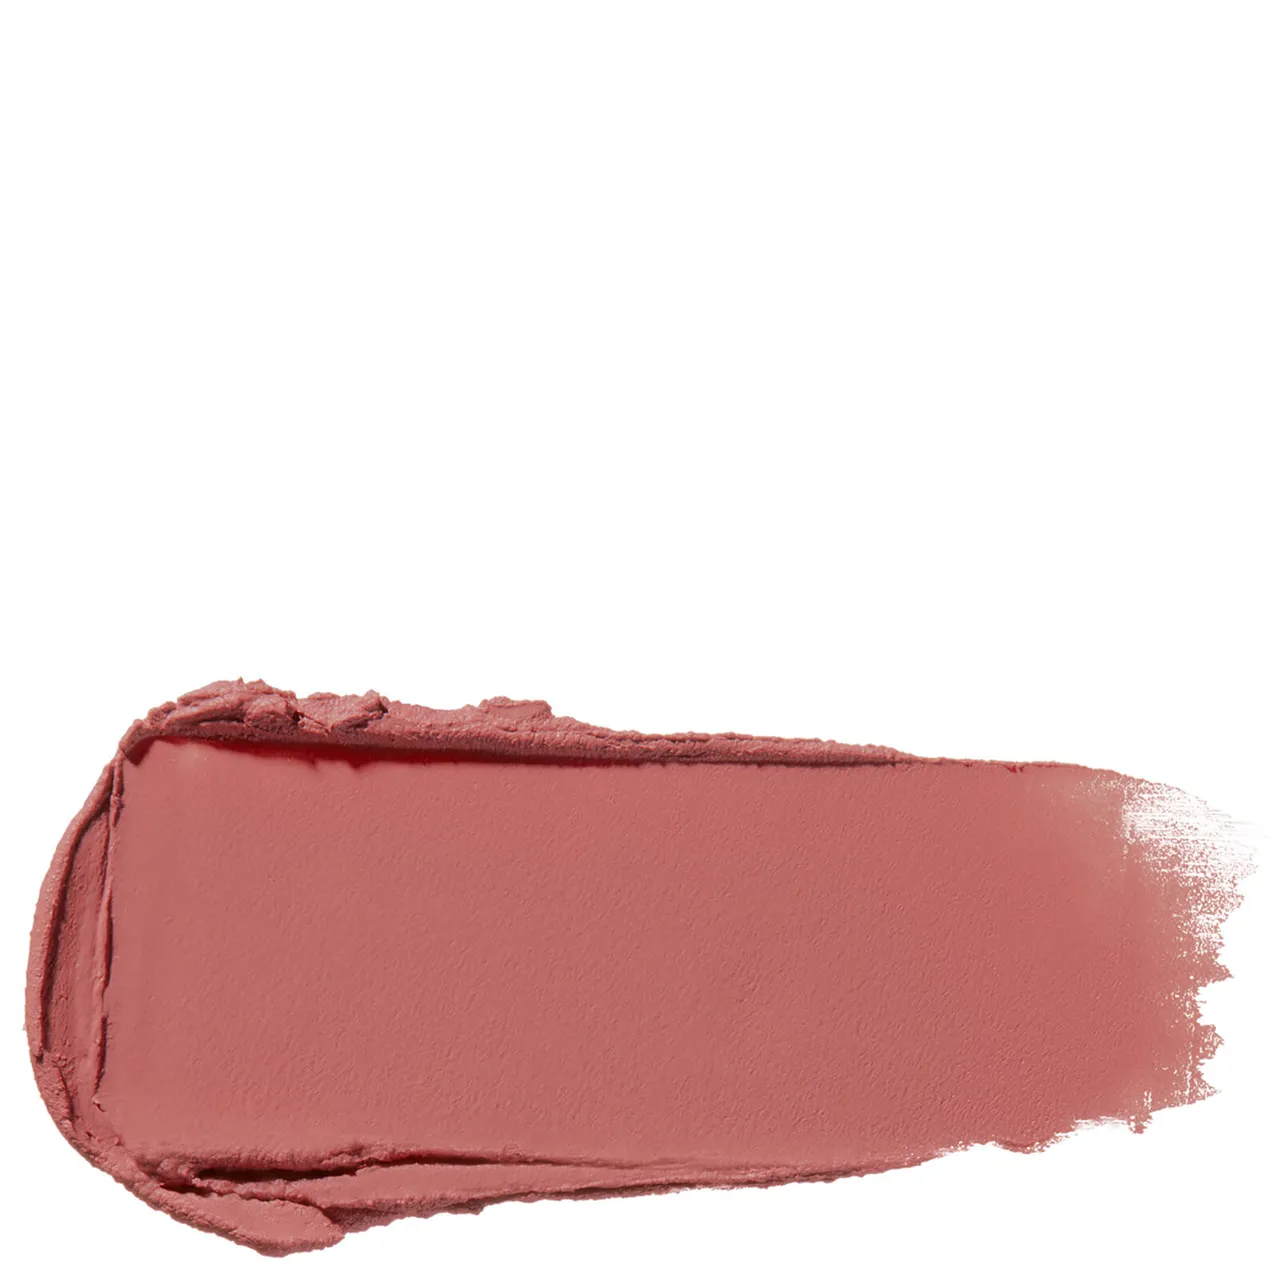 Shiseido ModernMatte Powder Lipstick (verschiedene Farbtöne) - Lipstick Disrobed 506